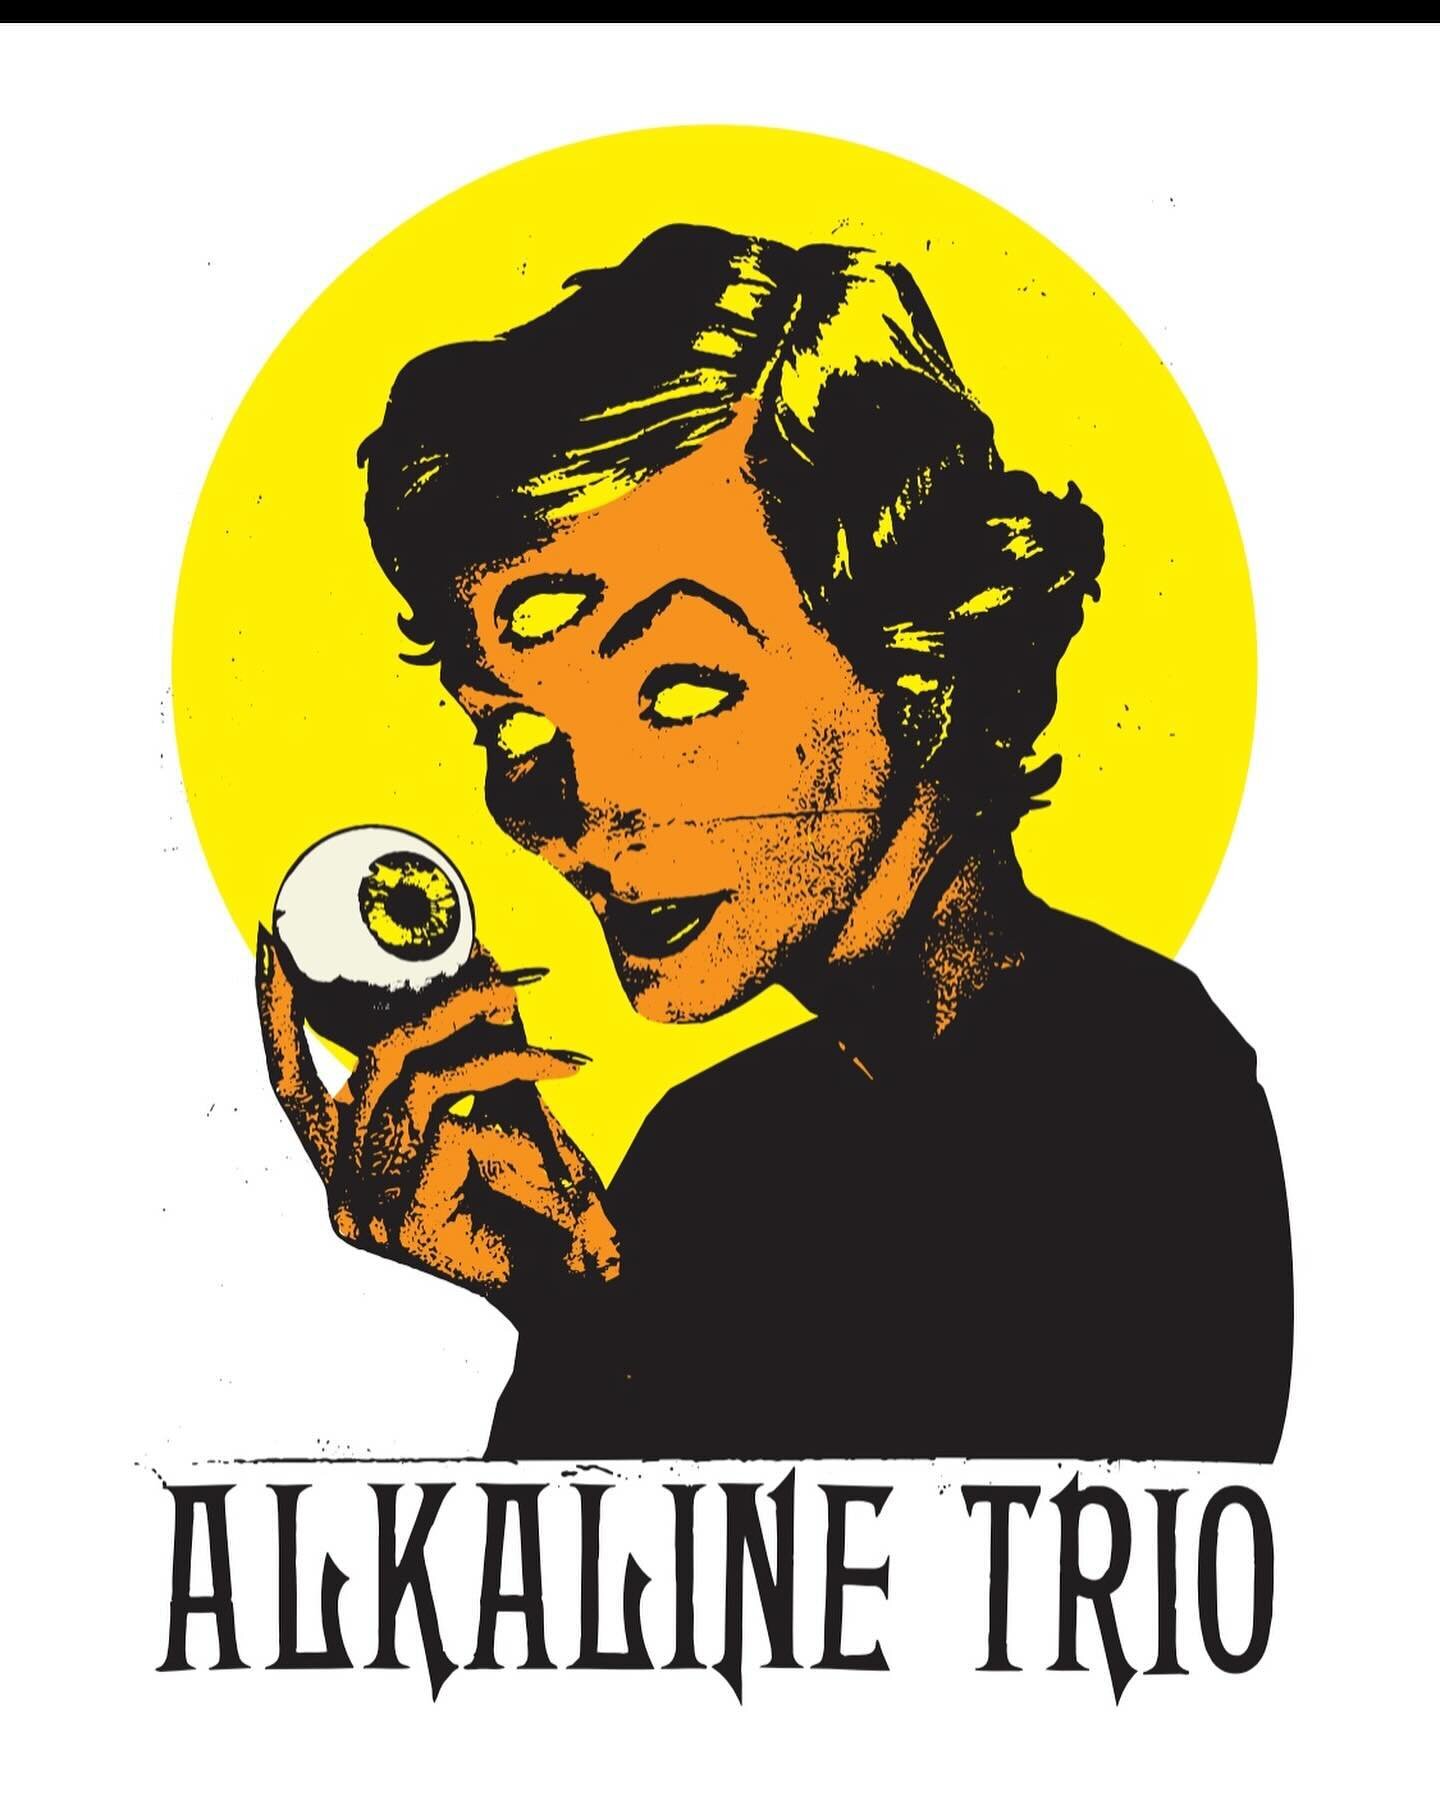 New work for @alkaline_trio ☠️🖤